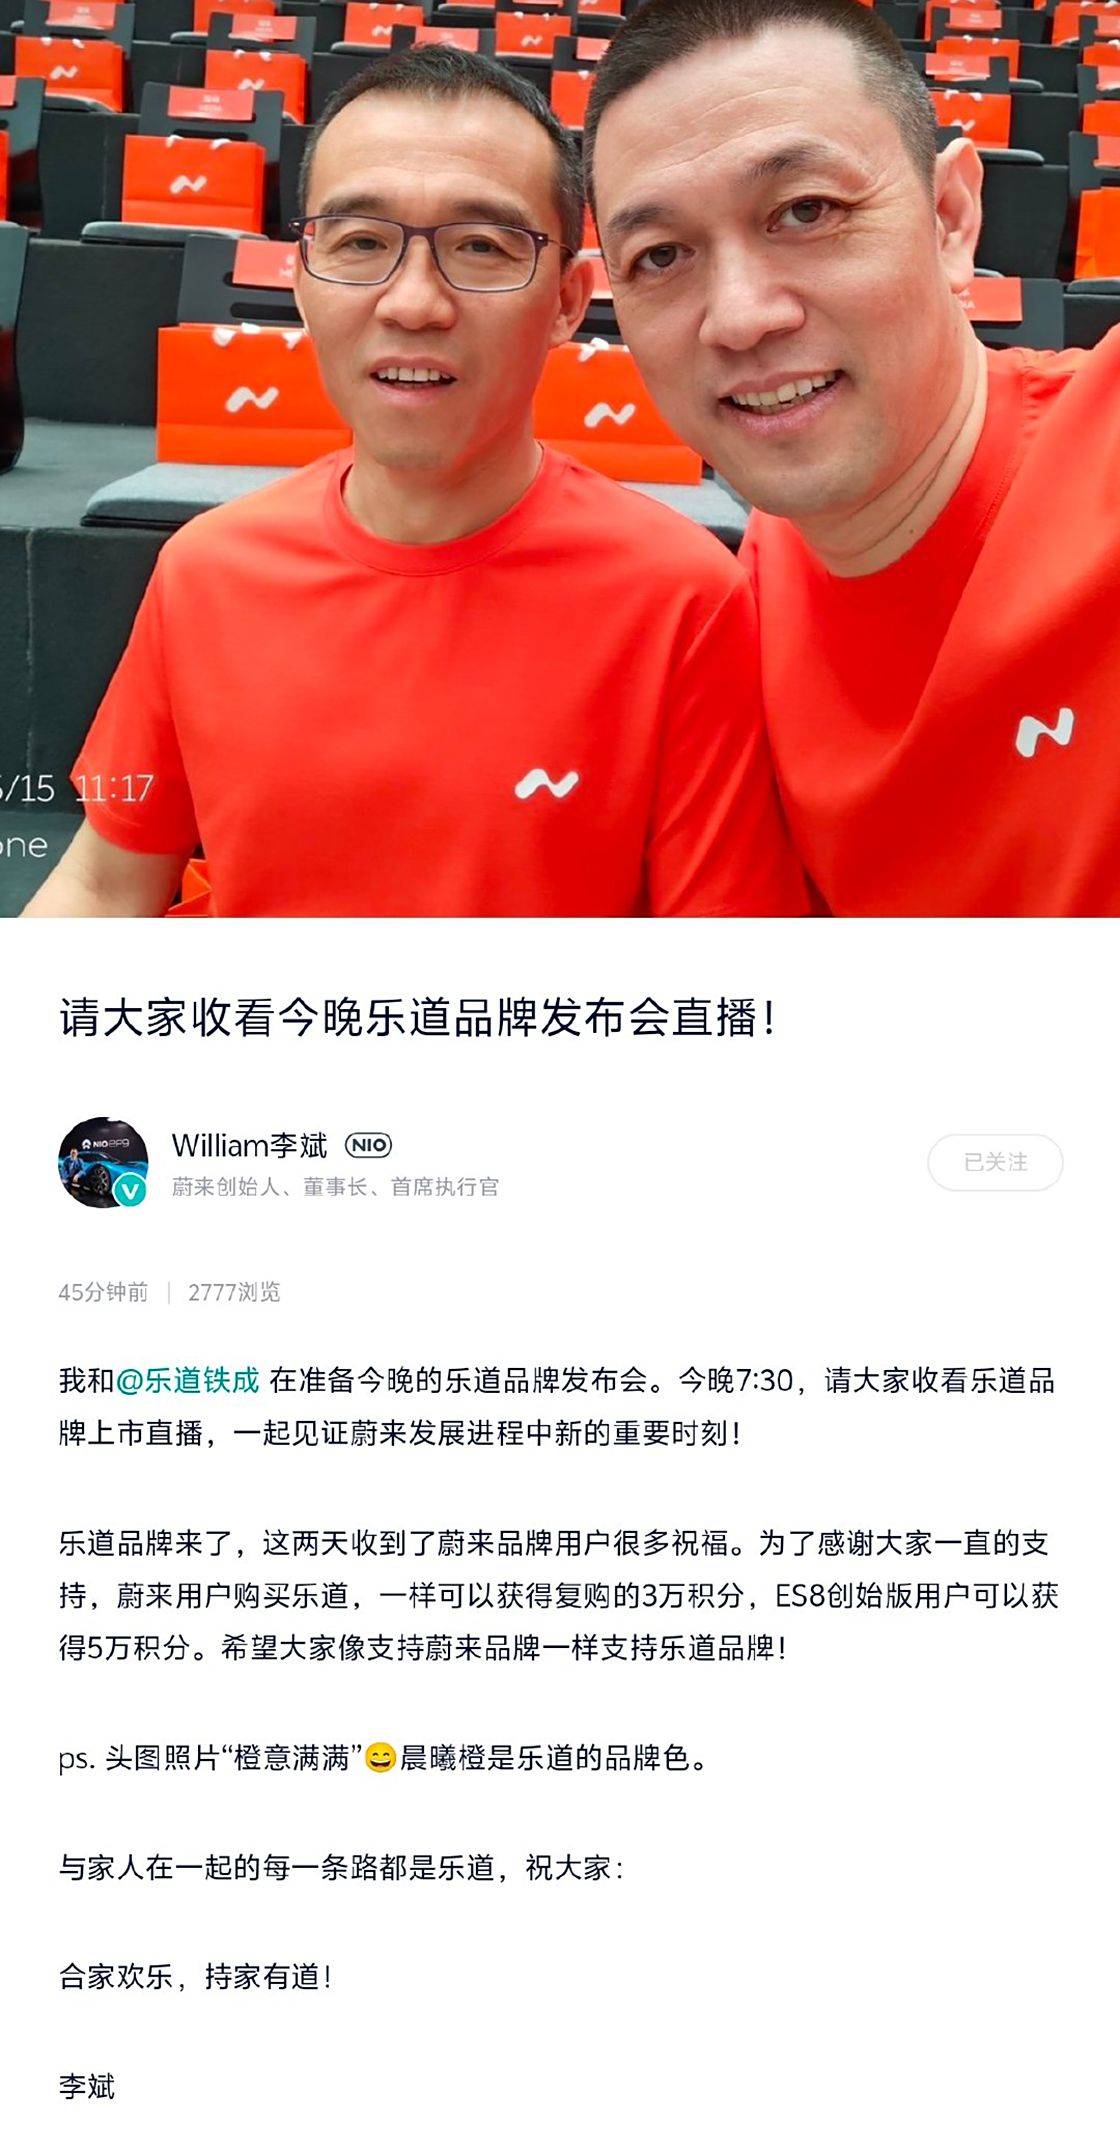 李斌:蔚来用户购买乐道_搜狐汽车_ Sohu.com可以获得3万积分。